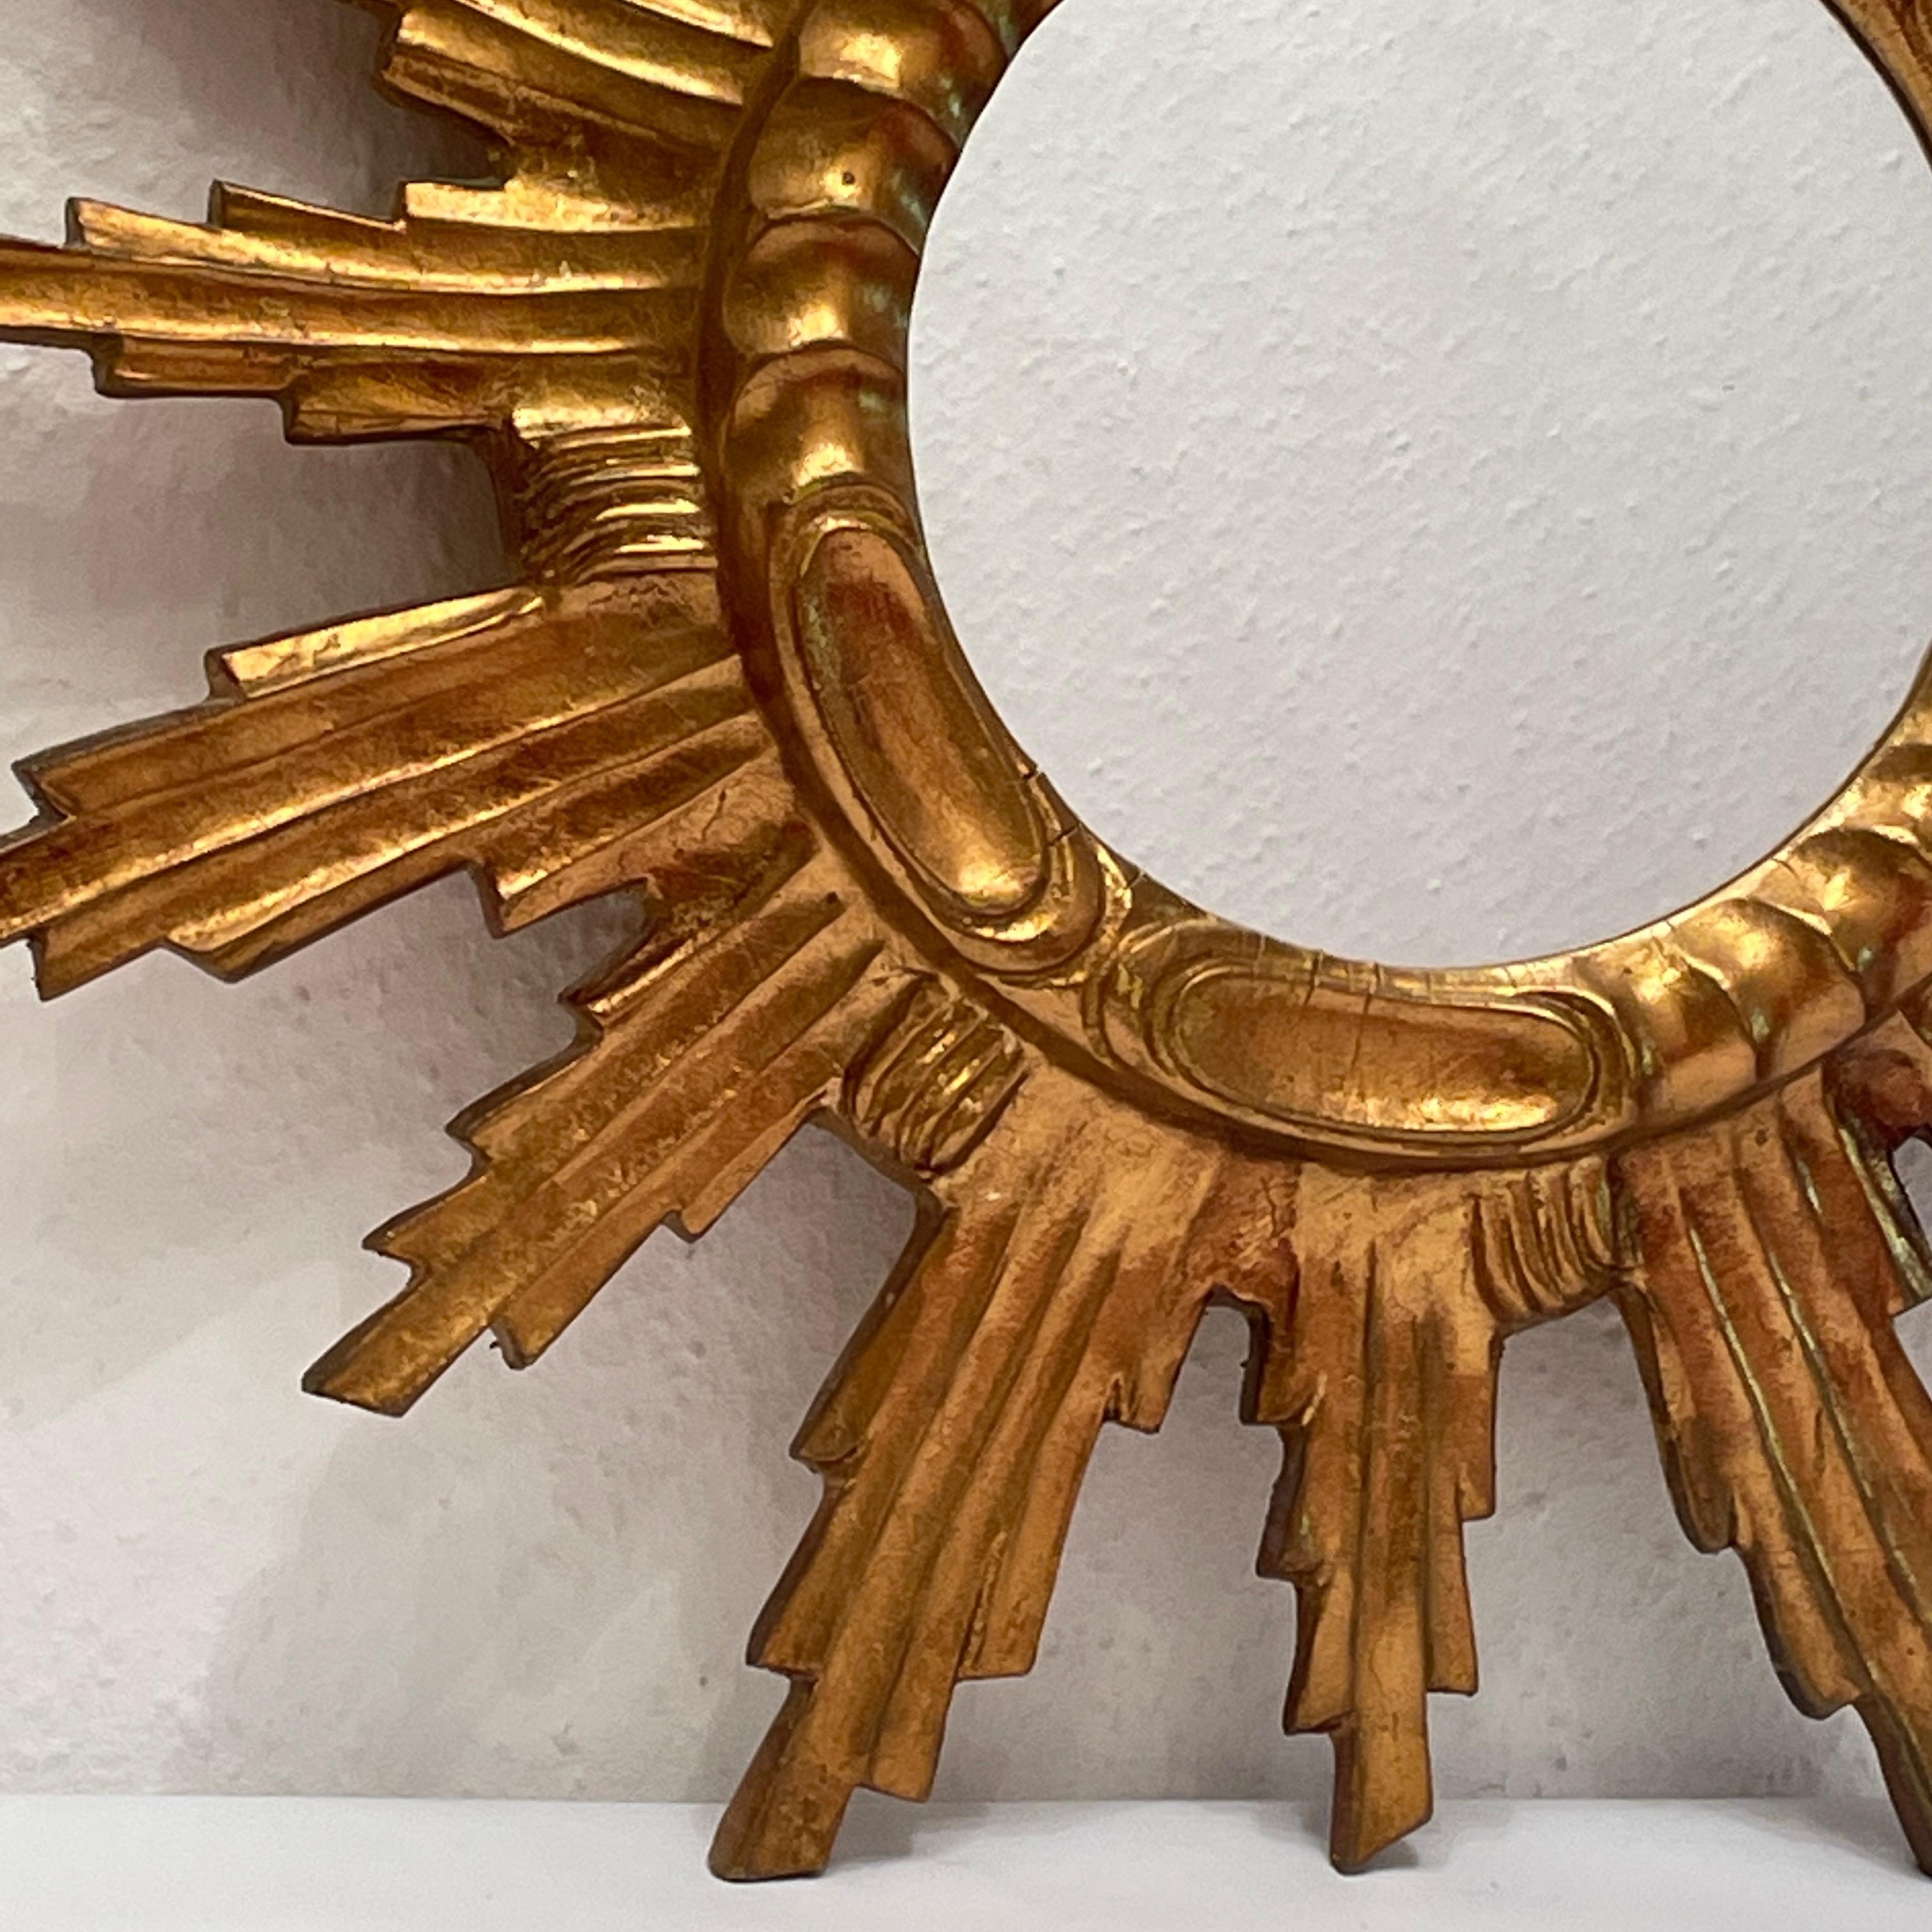 Ein schöner Starburst-Sunburst-Spiegel. Hergestellt aus vergoldeter Komposition und Holz. Es misst ca. 22,13